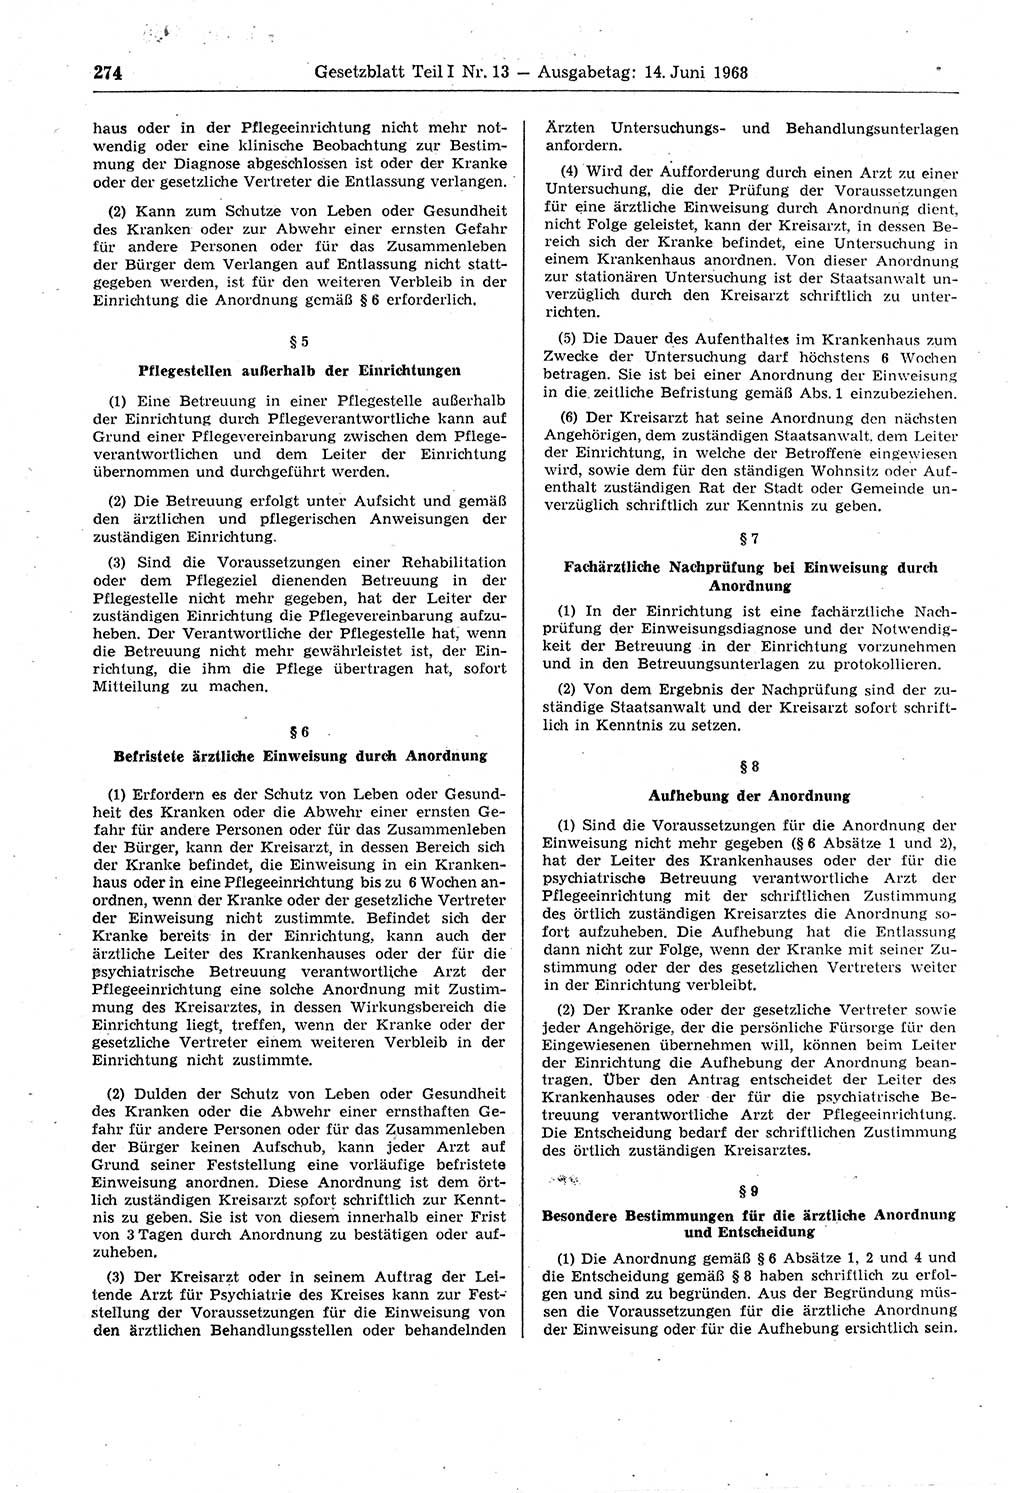 Gesetzblatt (GBl.) der Deutschen Demokratischen Republik (DDR) Teil Ⅰ 1968, Seite 274 (GBl. DDR Ⅰ 1968, S. 274)